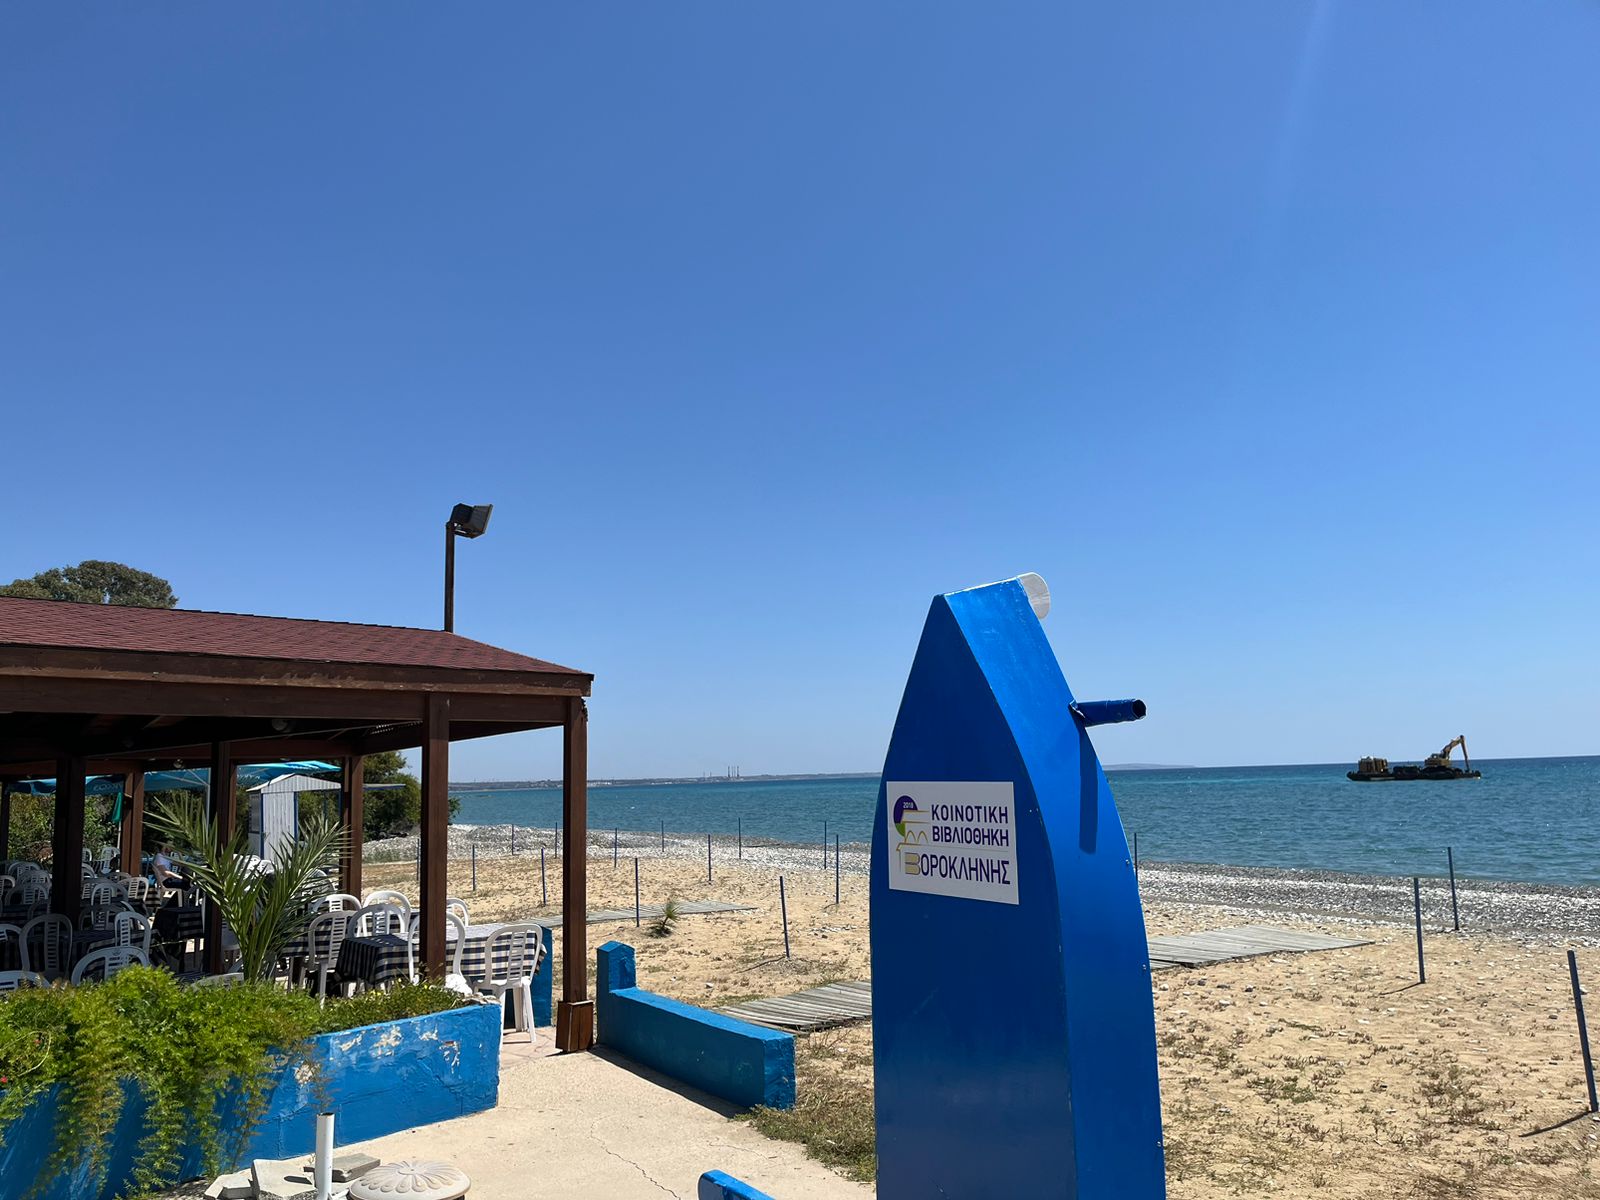 Ακόμη μια βάρκα βιβλιοθήκη εγκαταστάθηκε στην παραλία Βορόκληνης πάρα το εστιατόριο Γαλάζιο Κύμα